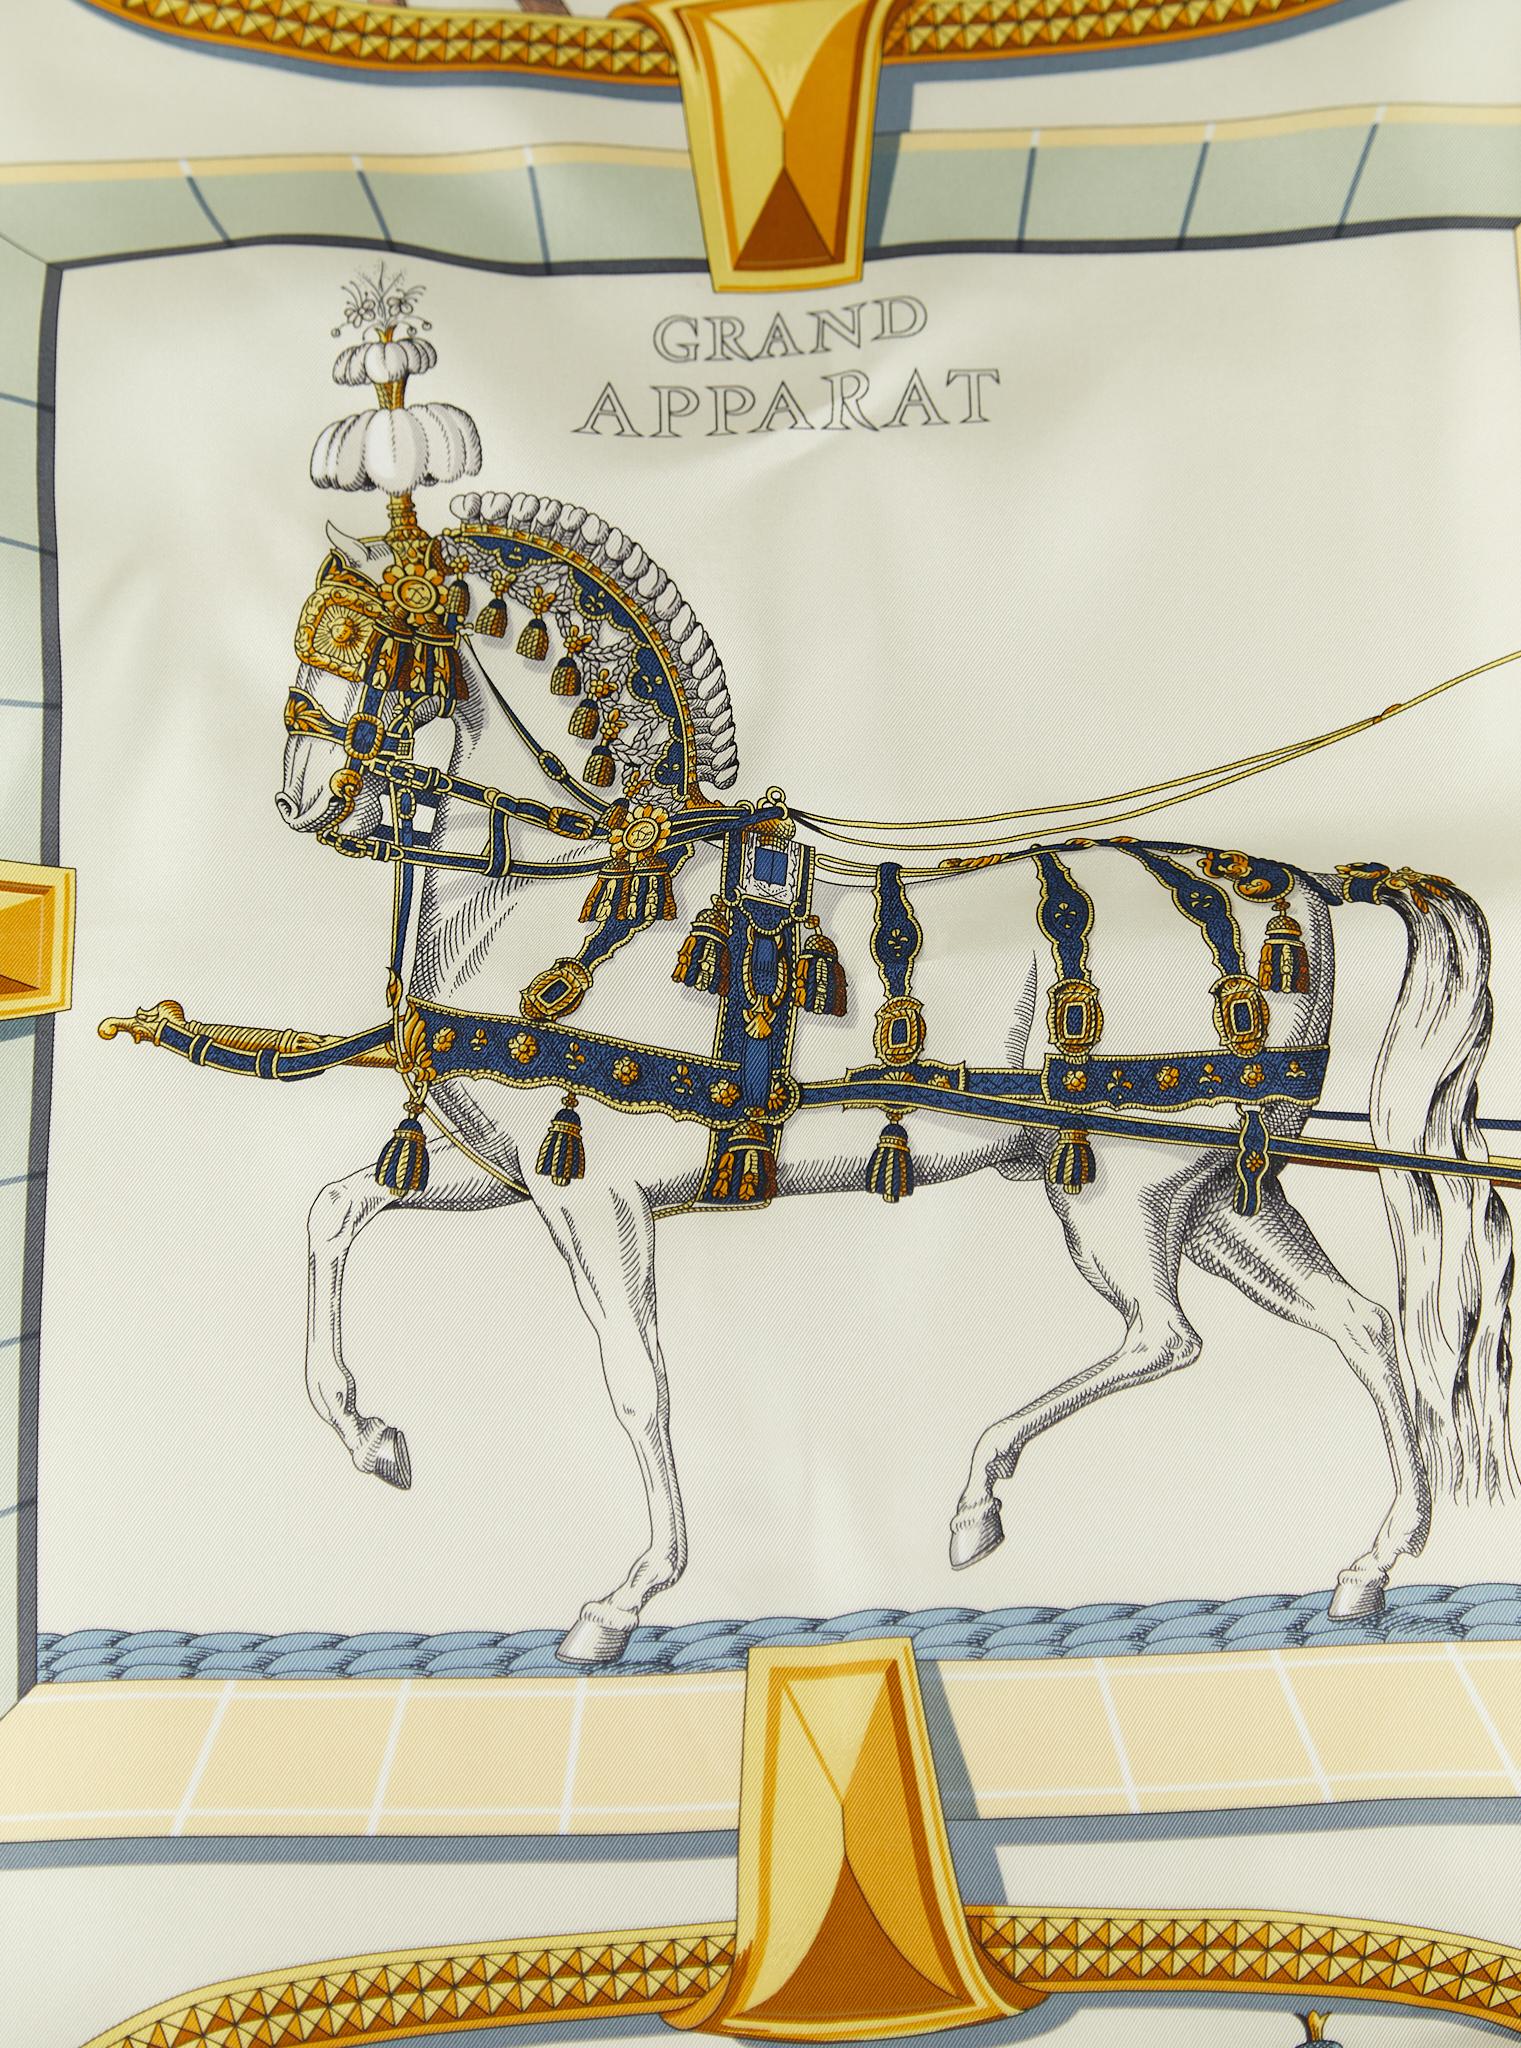 Hermès Grand Apparat Forever Schal aus Seidenköper mit handgerollten Kanten (100% Seide)

Hergestellt in Frankreich

Abmessungen: 90 x 90 cm 

*Kommt nicht mit Box